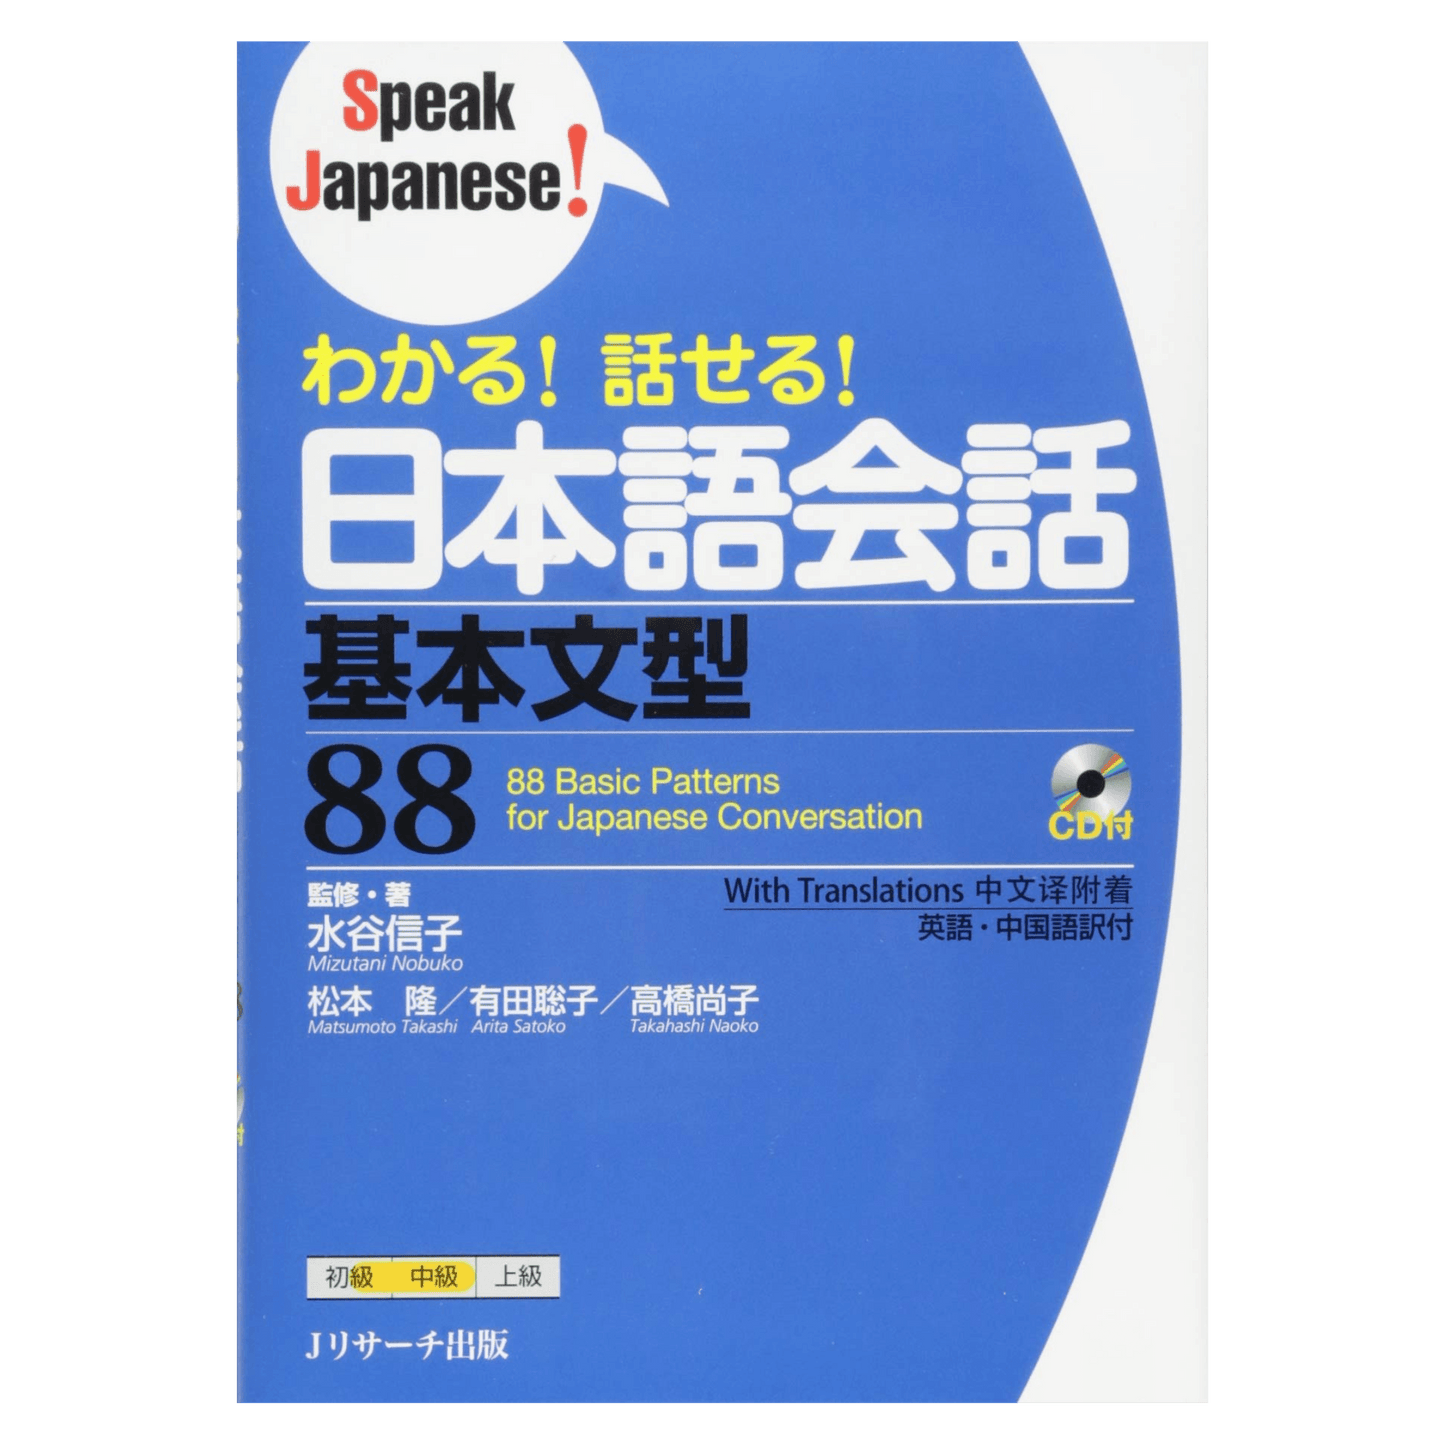 日语手册 | 说日语！わかる!话せる!日本语会话 ChitoroShop